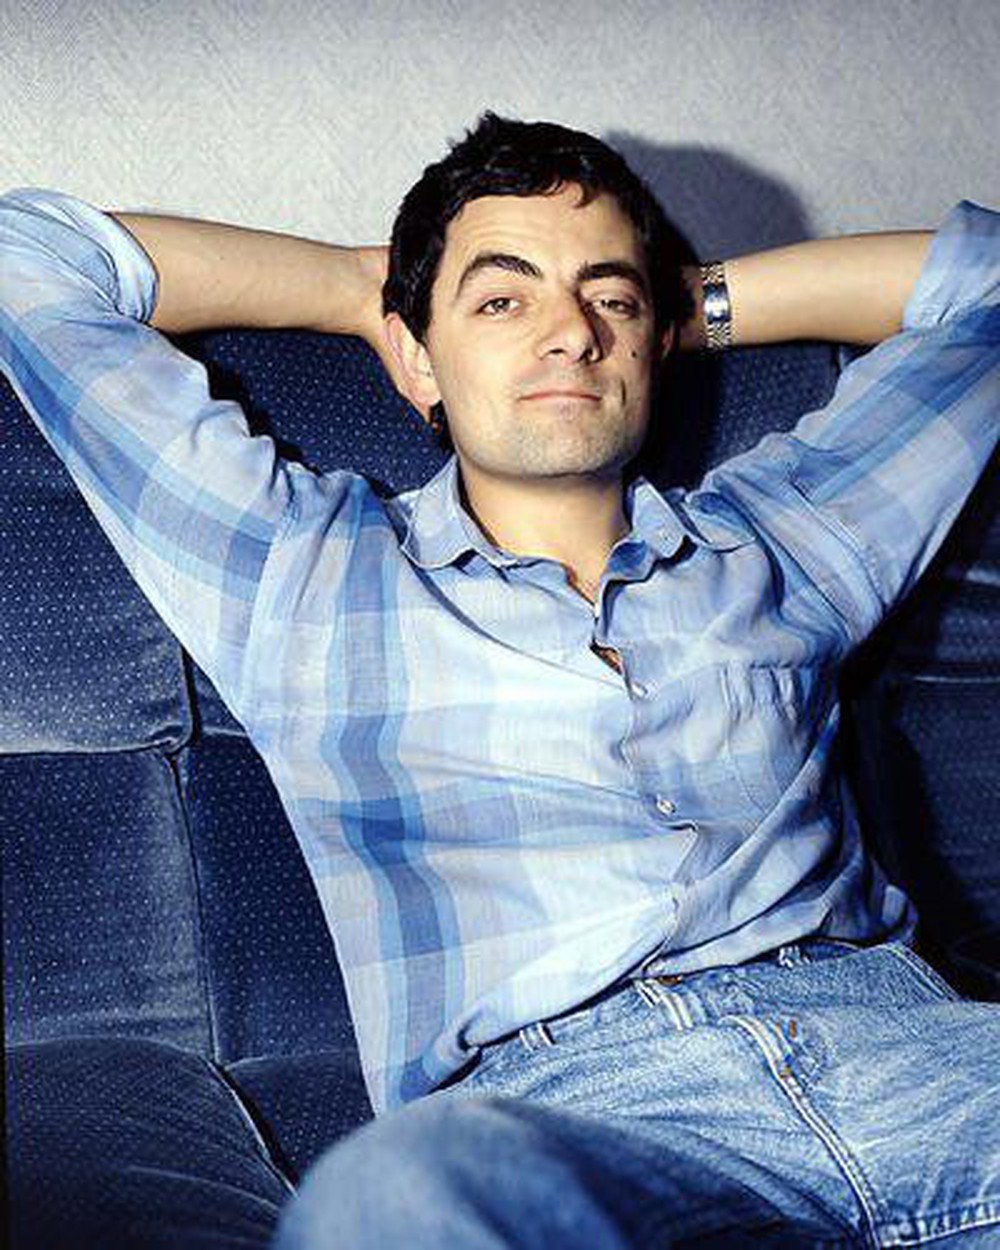 Vua hài Mr. Bean Rowan Atkinson: Vứt bỏ hôn nhân hơn nửa đời người trong vòng 65 giây, để đi theo tiếng gọi tình yêu - Ảnh 3.